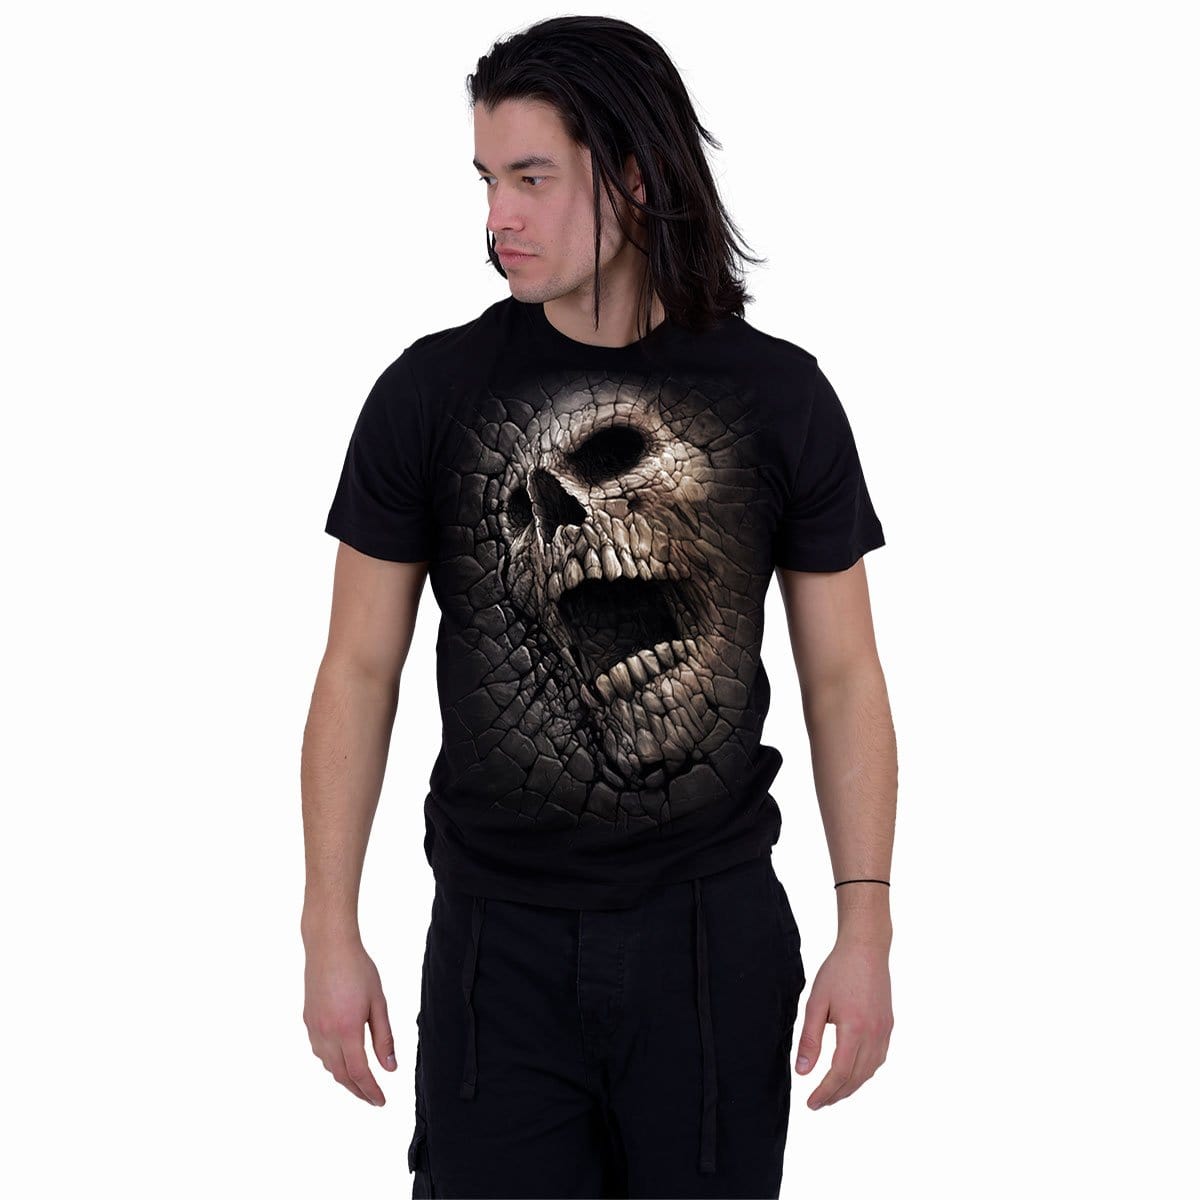 Cracked Skull Jersey, Cool Skull Shirts, Designer Skull Shirts